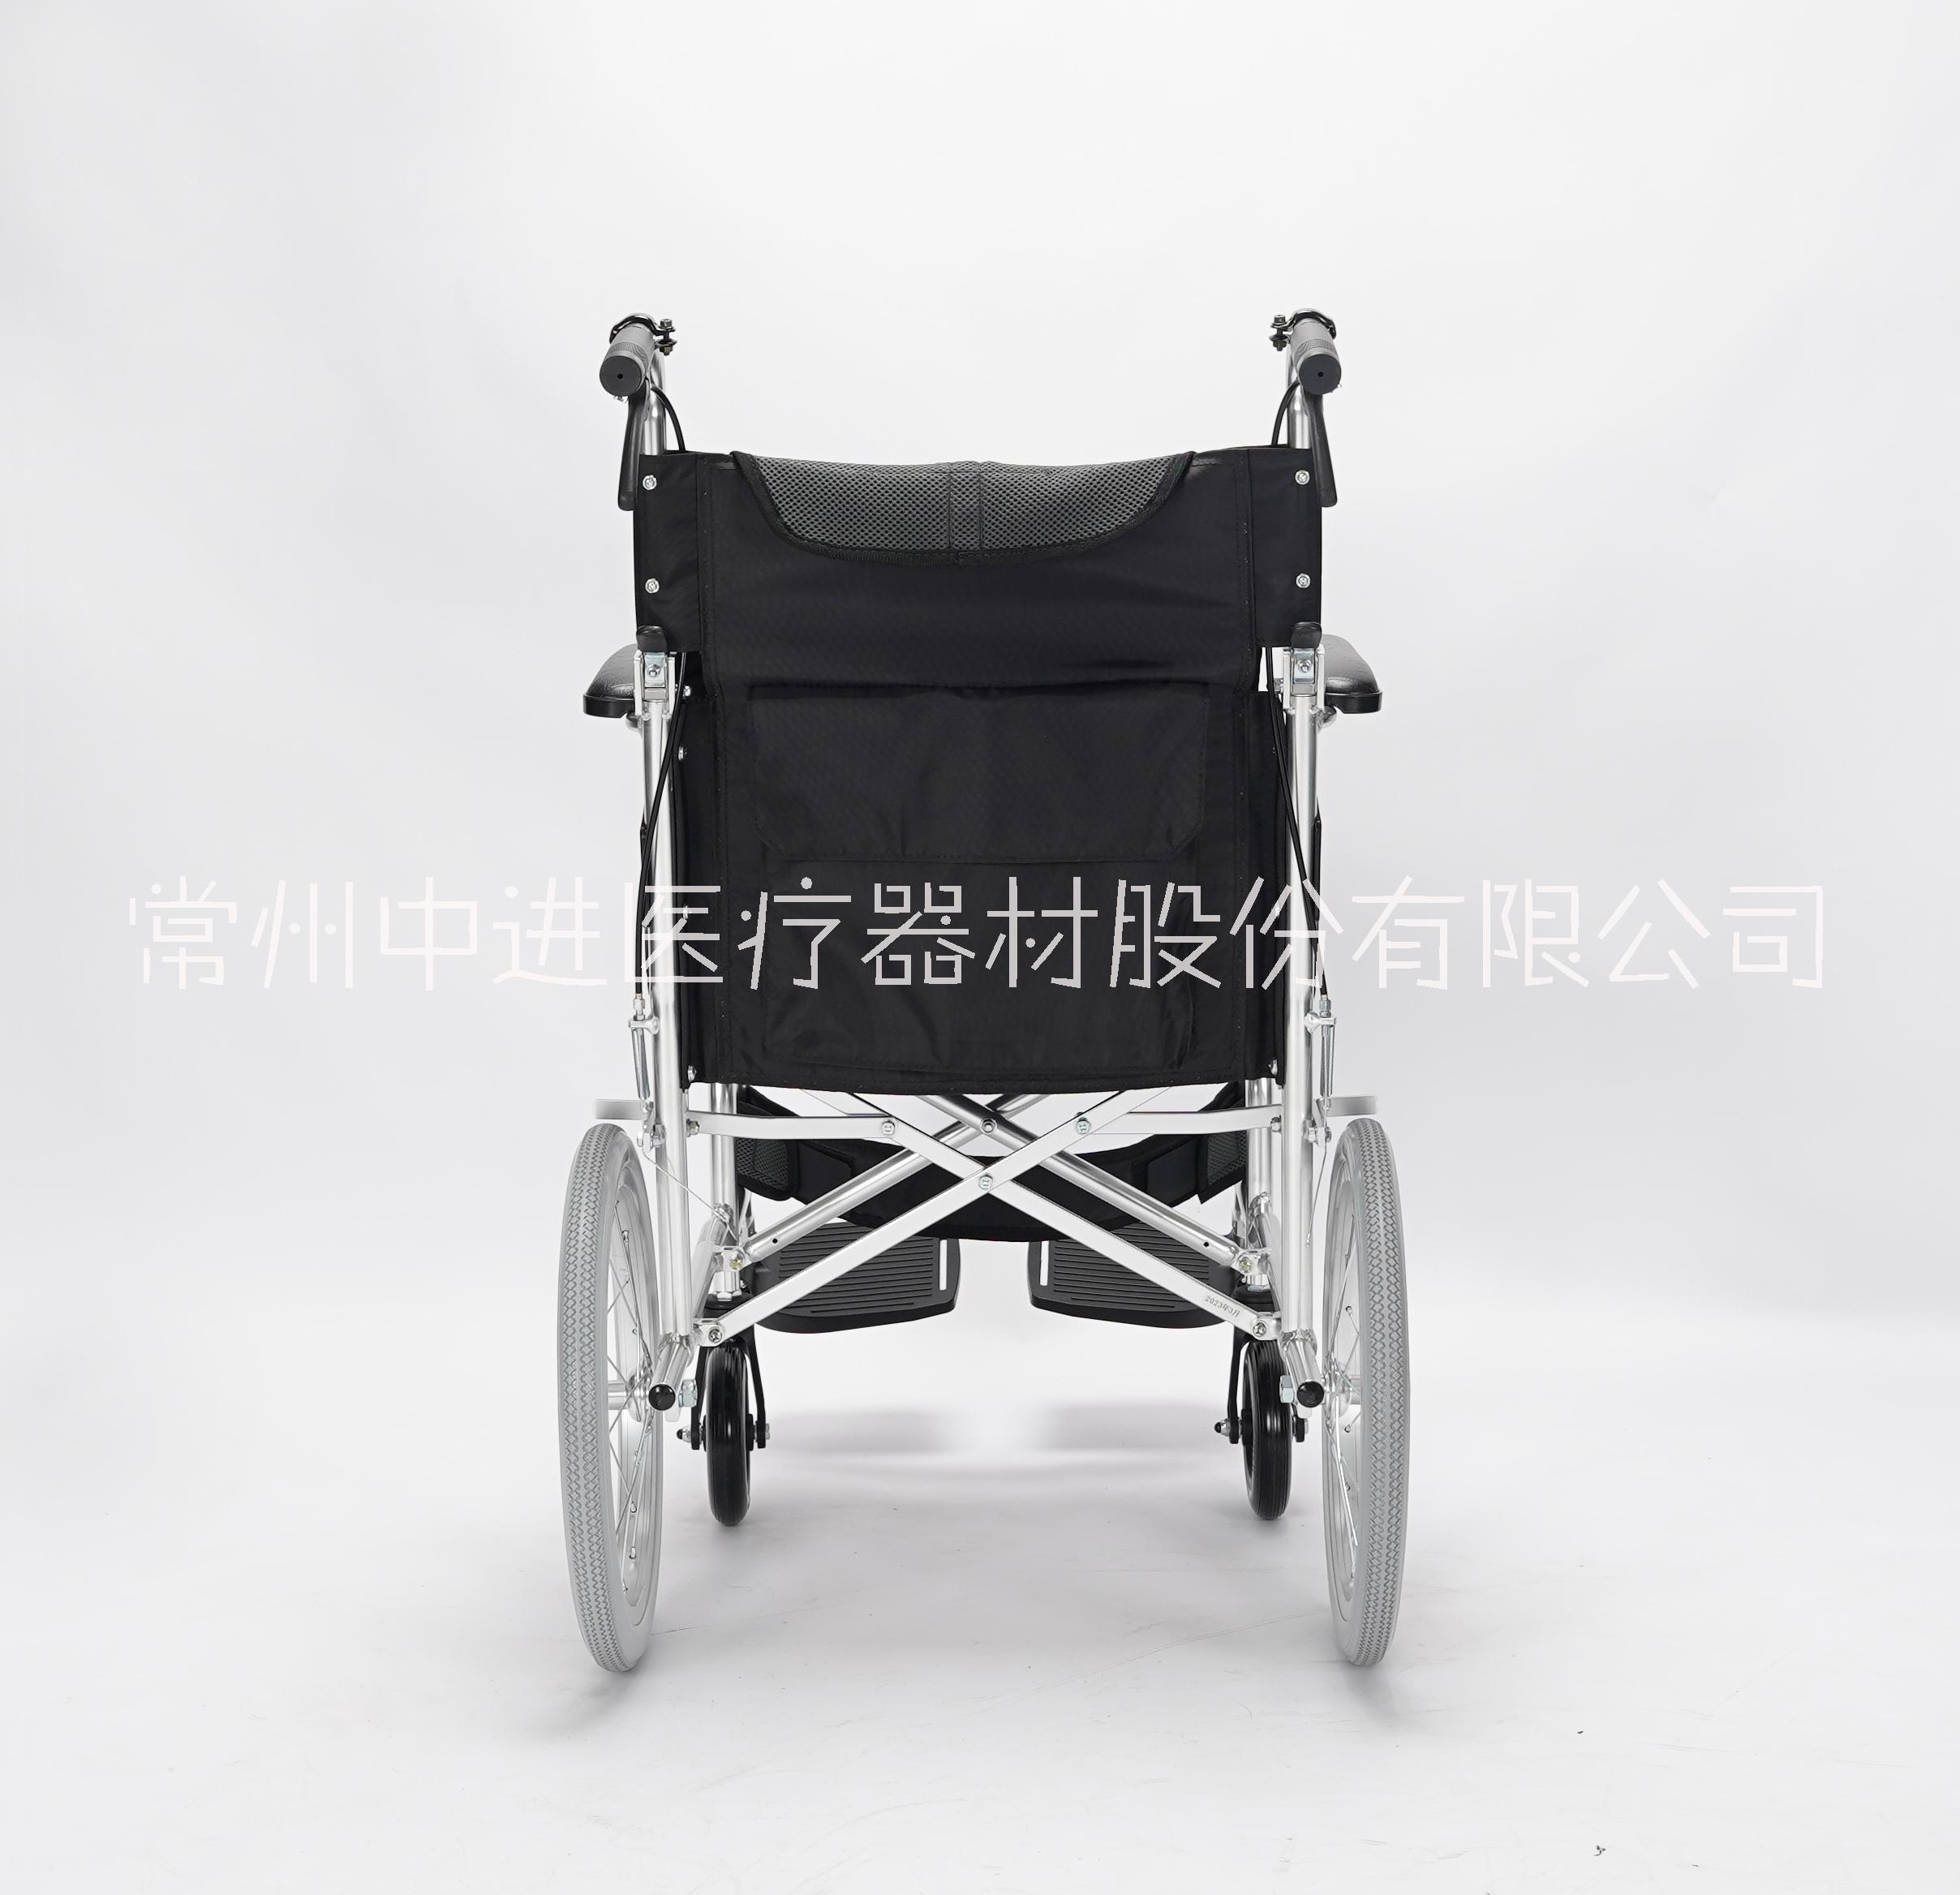 中进航钛铝合金轮椅车老年人助行轮椅车残疾人轮椅中进航钛铝合金轮椅车老年人助行轮椅车残疾人轮椅出口日本轮椅超轻便多功能轮椅定制